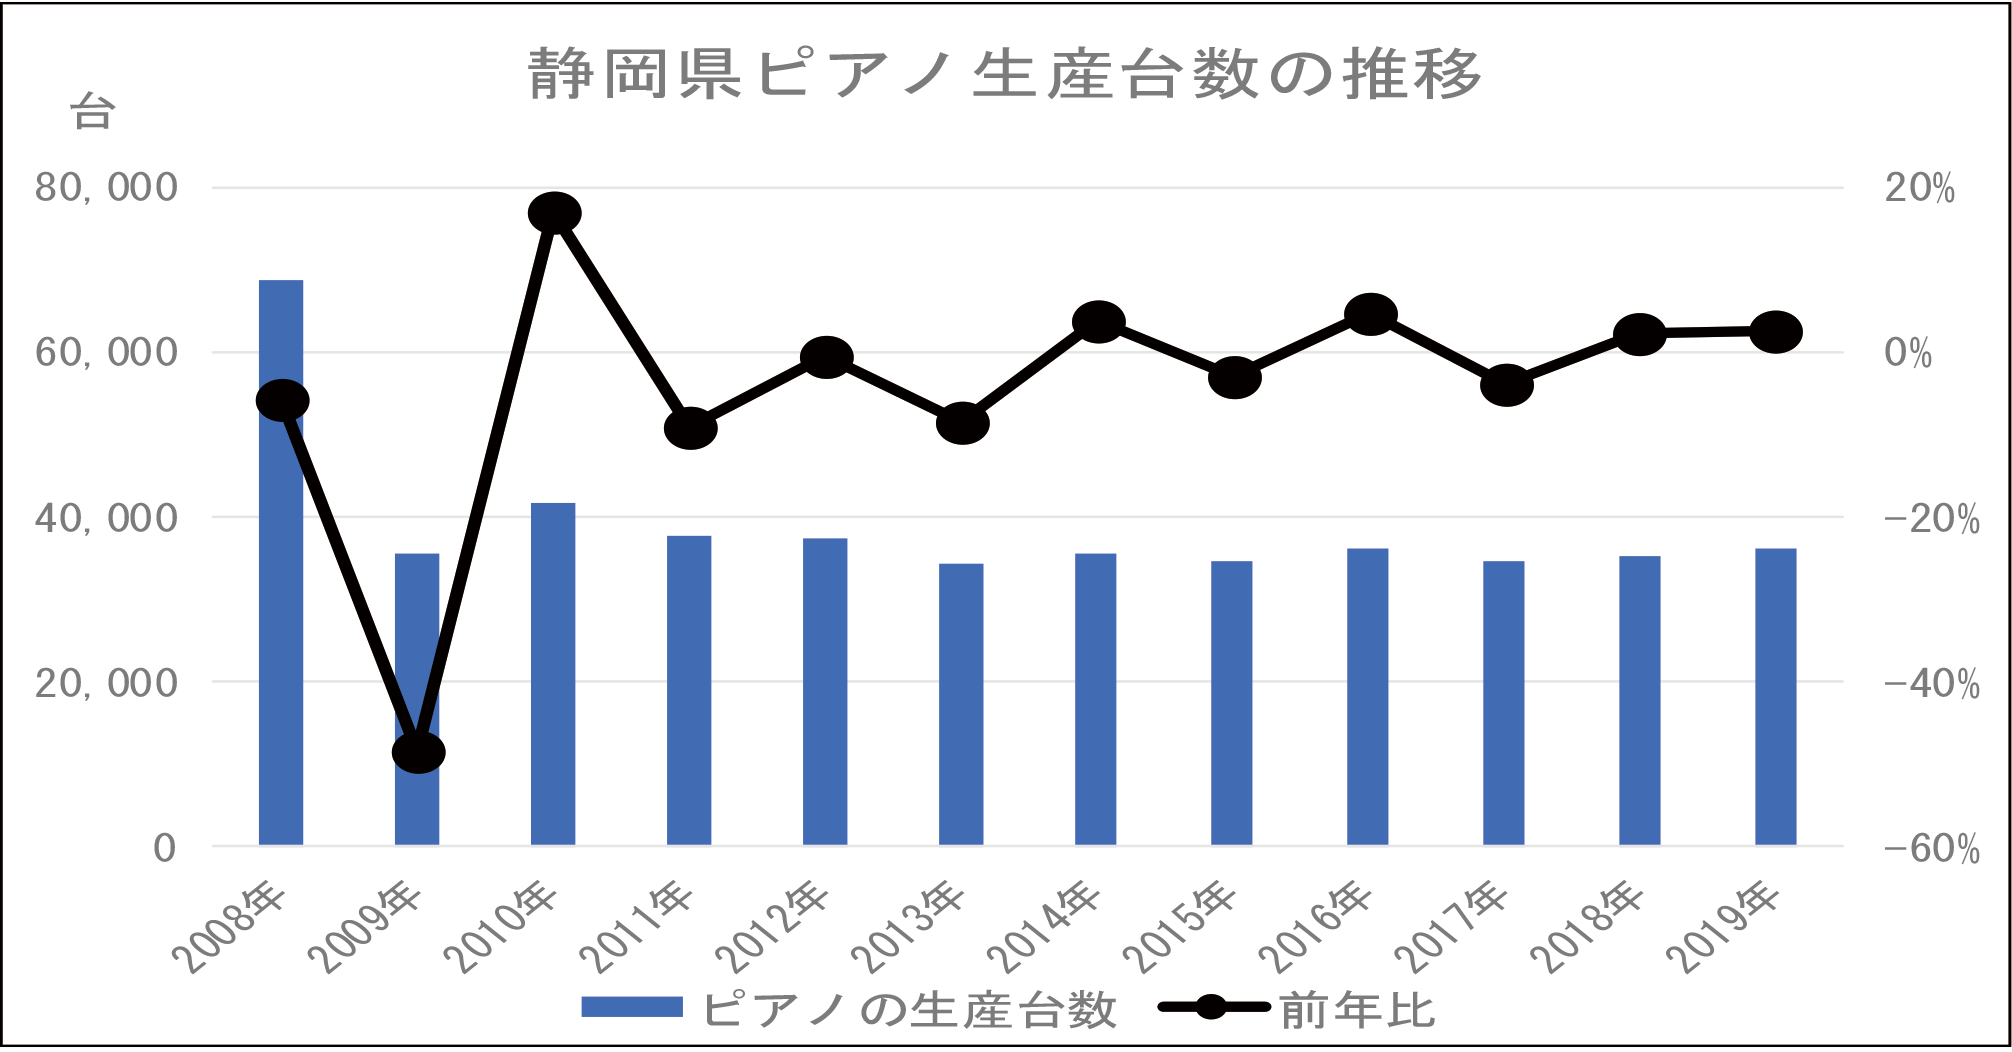 図表 静岡県ピアノ生産台数の推移